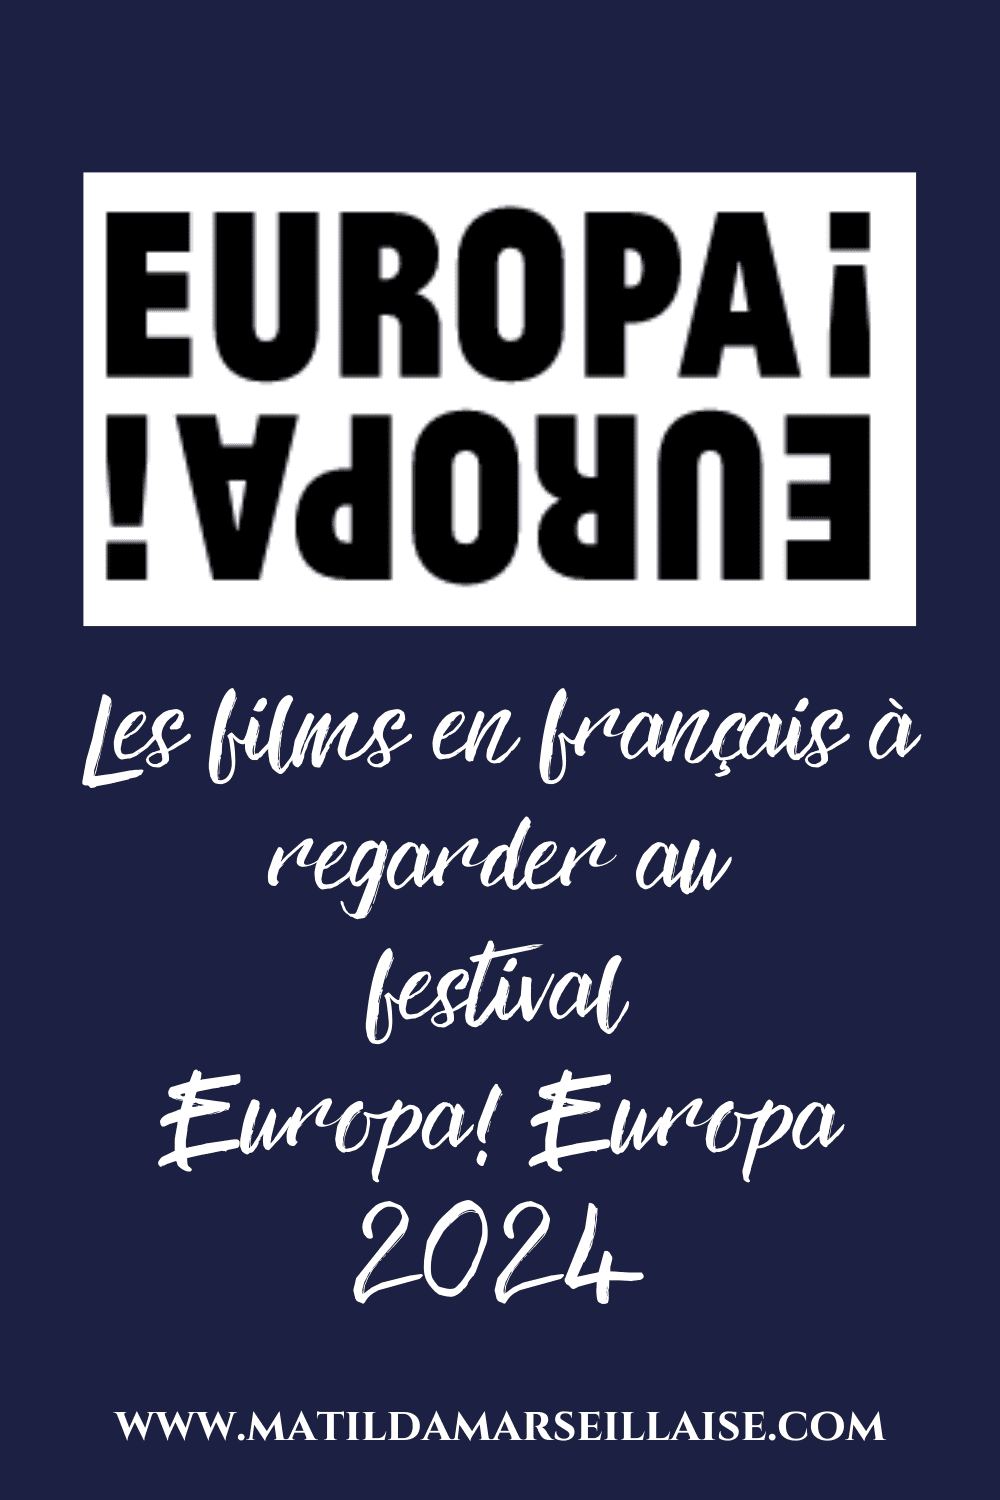 Europa ! Europa 2024 arrive dans les salles de cinéma cette semaine avec une programmation passionnante de films français et européens